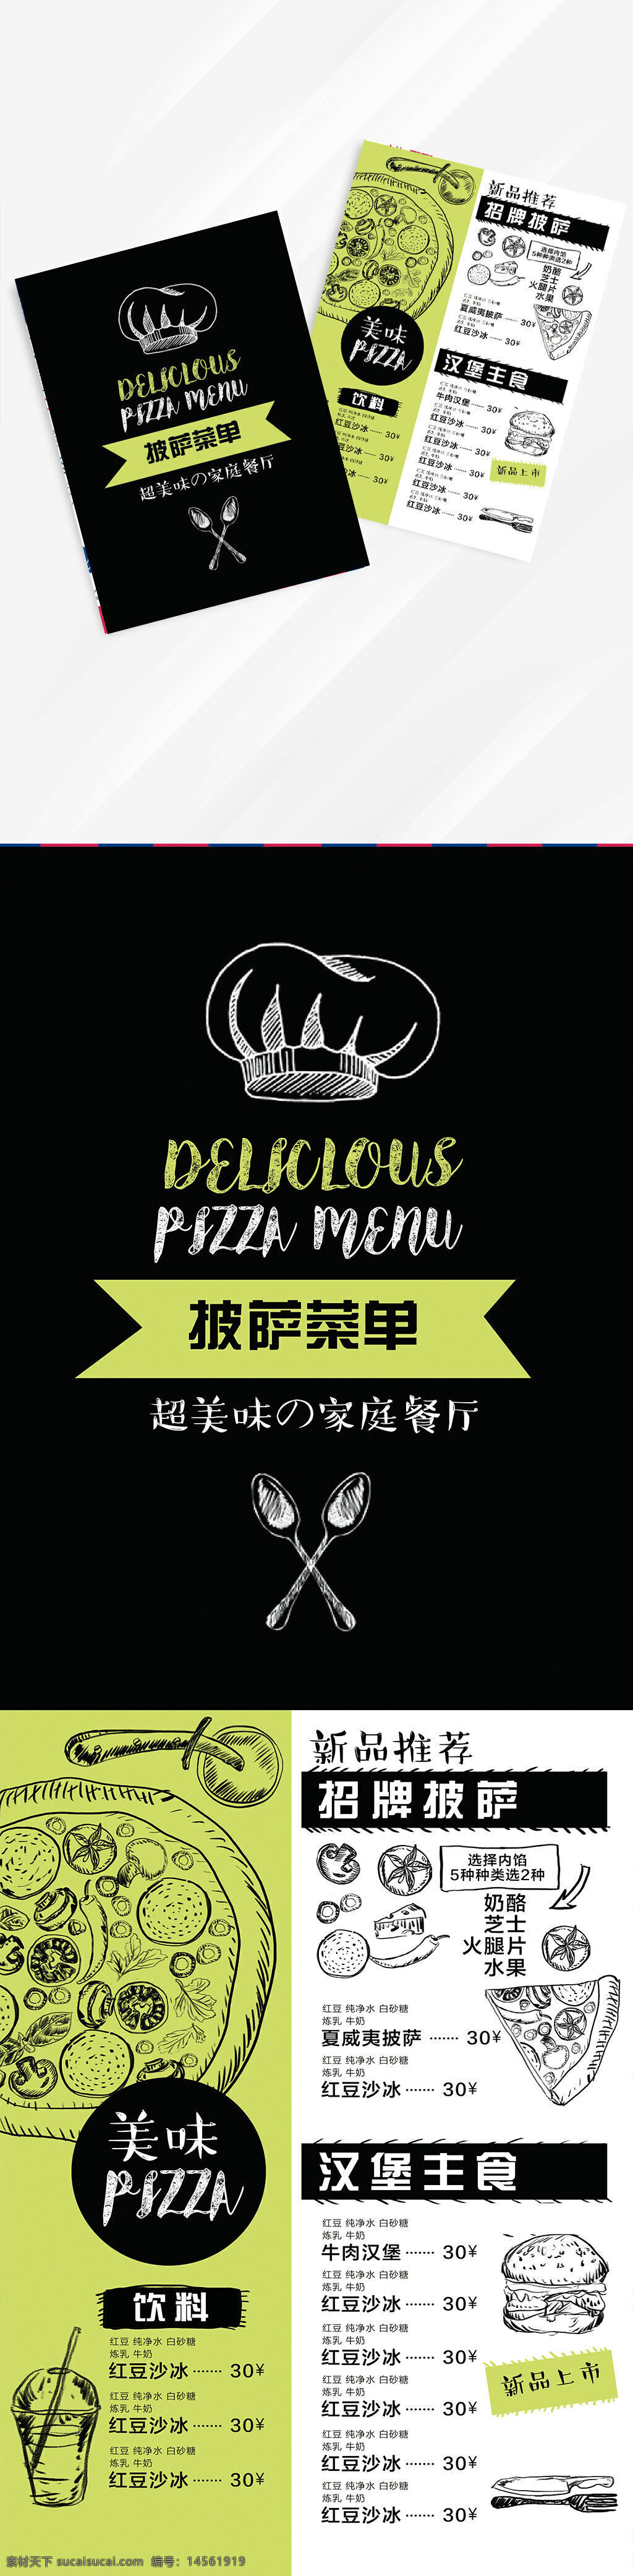 披萨宣传单 披萨单页 披萨门店 披萨灯箱 美味披萨 披萨外卖 西餐菜单 西餐 设计 广告设计 菜单菜谱